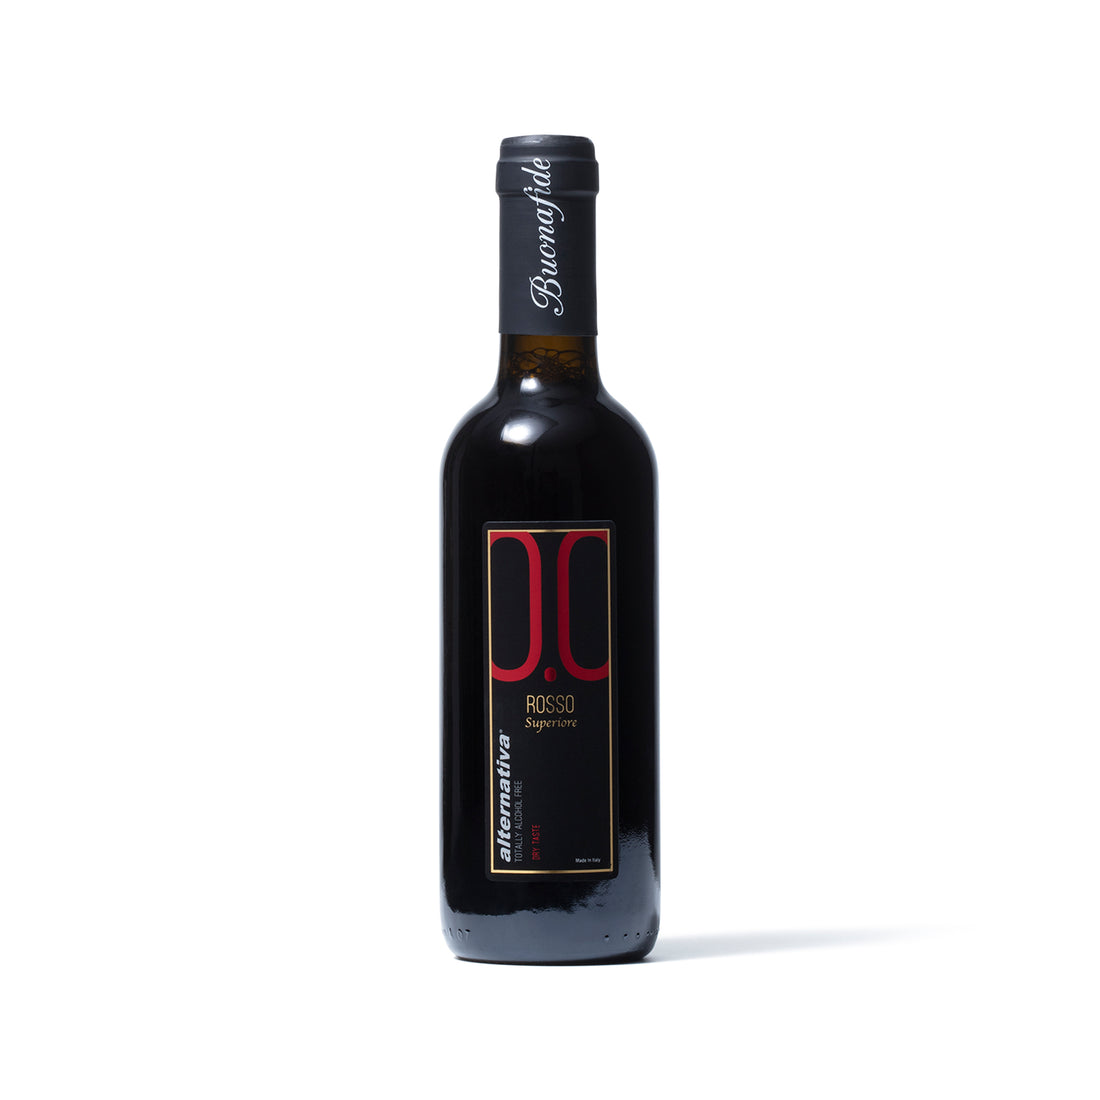 Buonafide 0.0 - Rosso "Superiore" Half Bottle - Non-Alcoholic Italian Wine - Boisson — Brooklyn's Non-Alcoholic Spirits, Beer, Wine, and Home Bar Shop in Cobble Hill